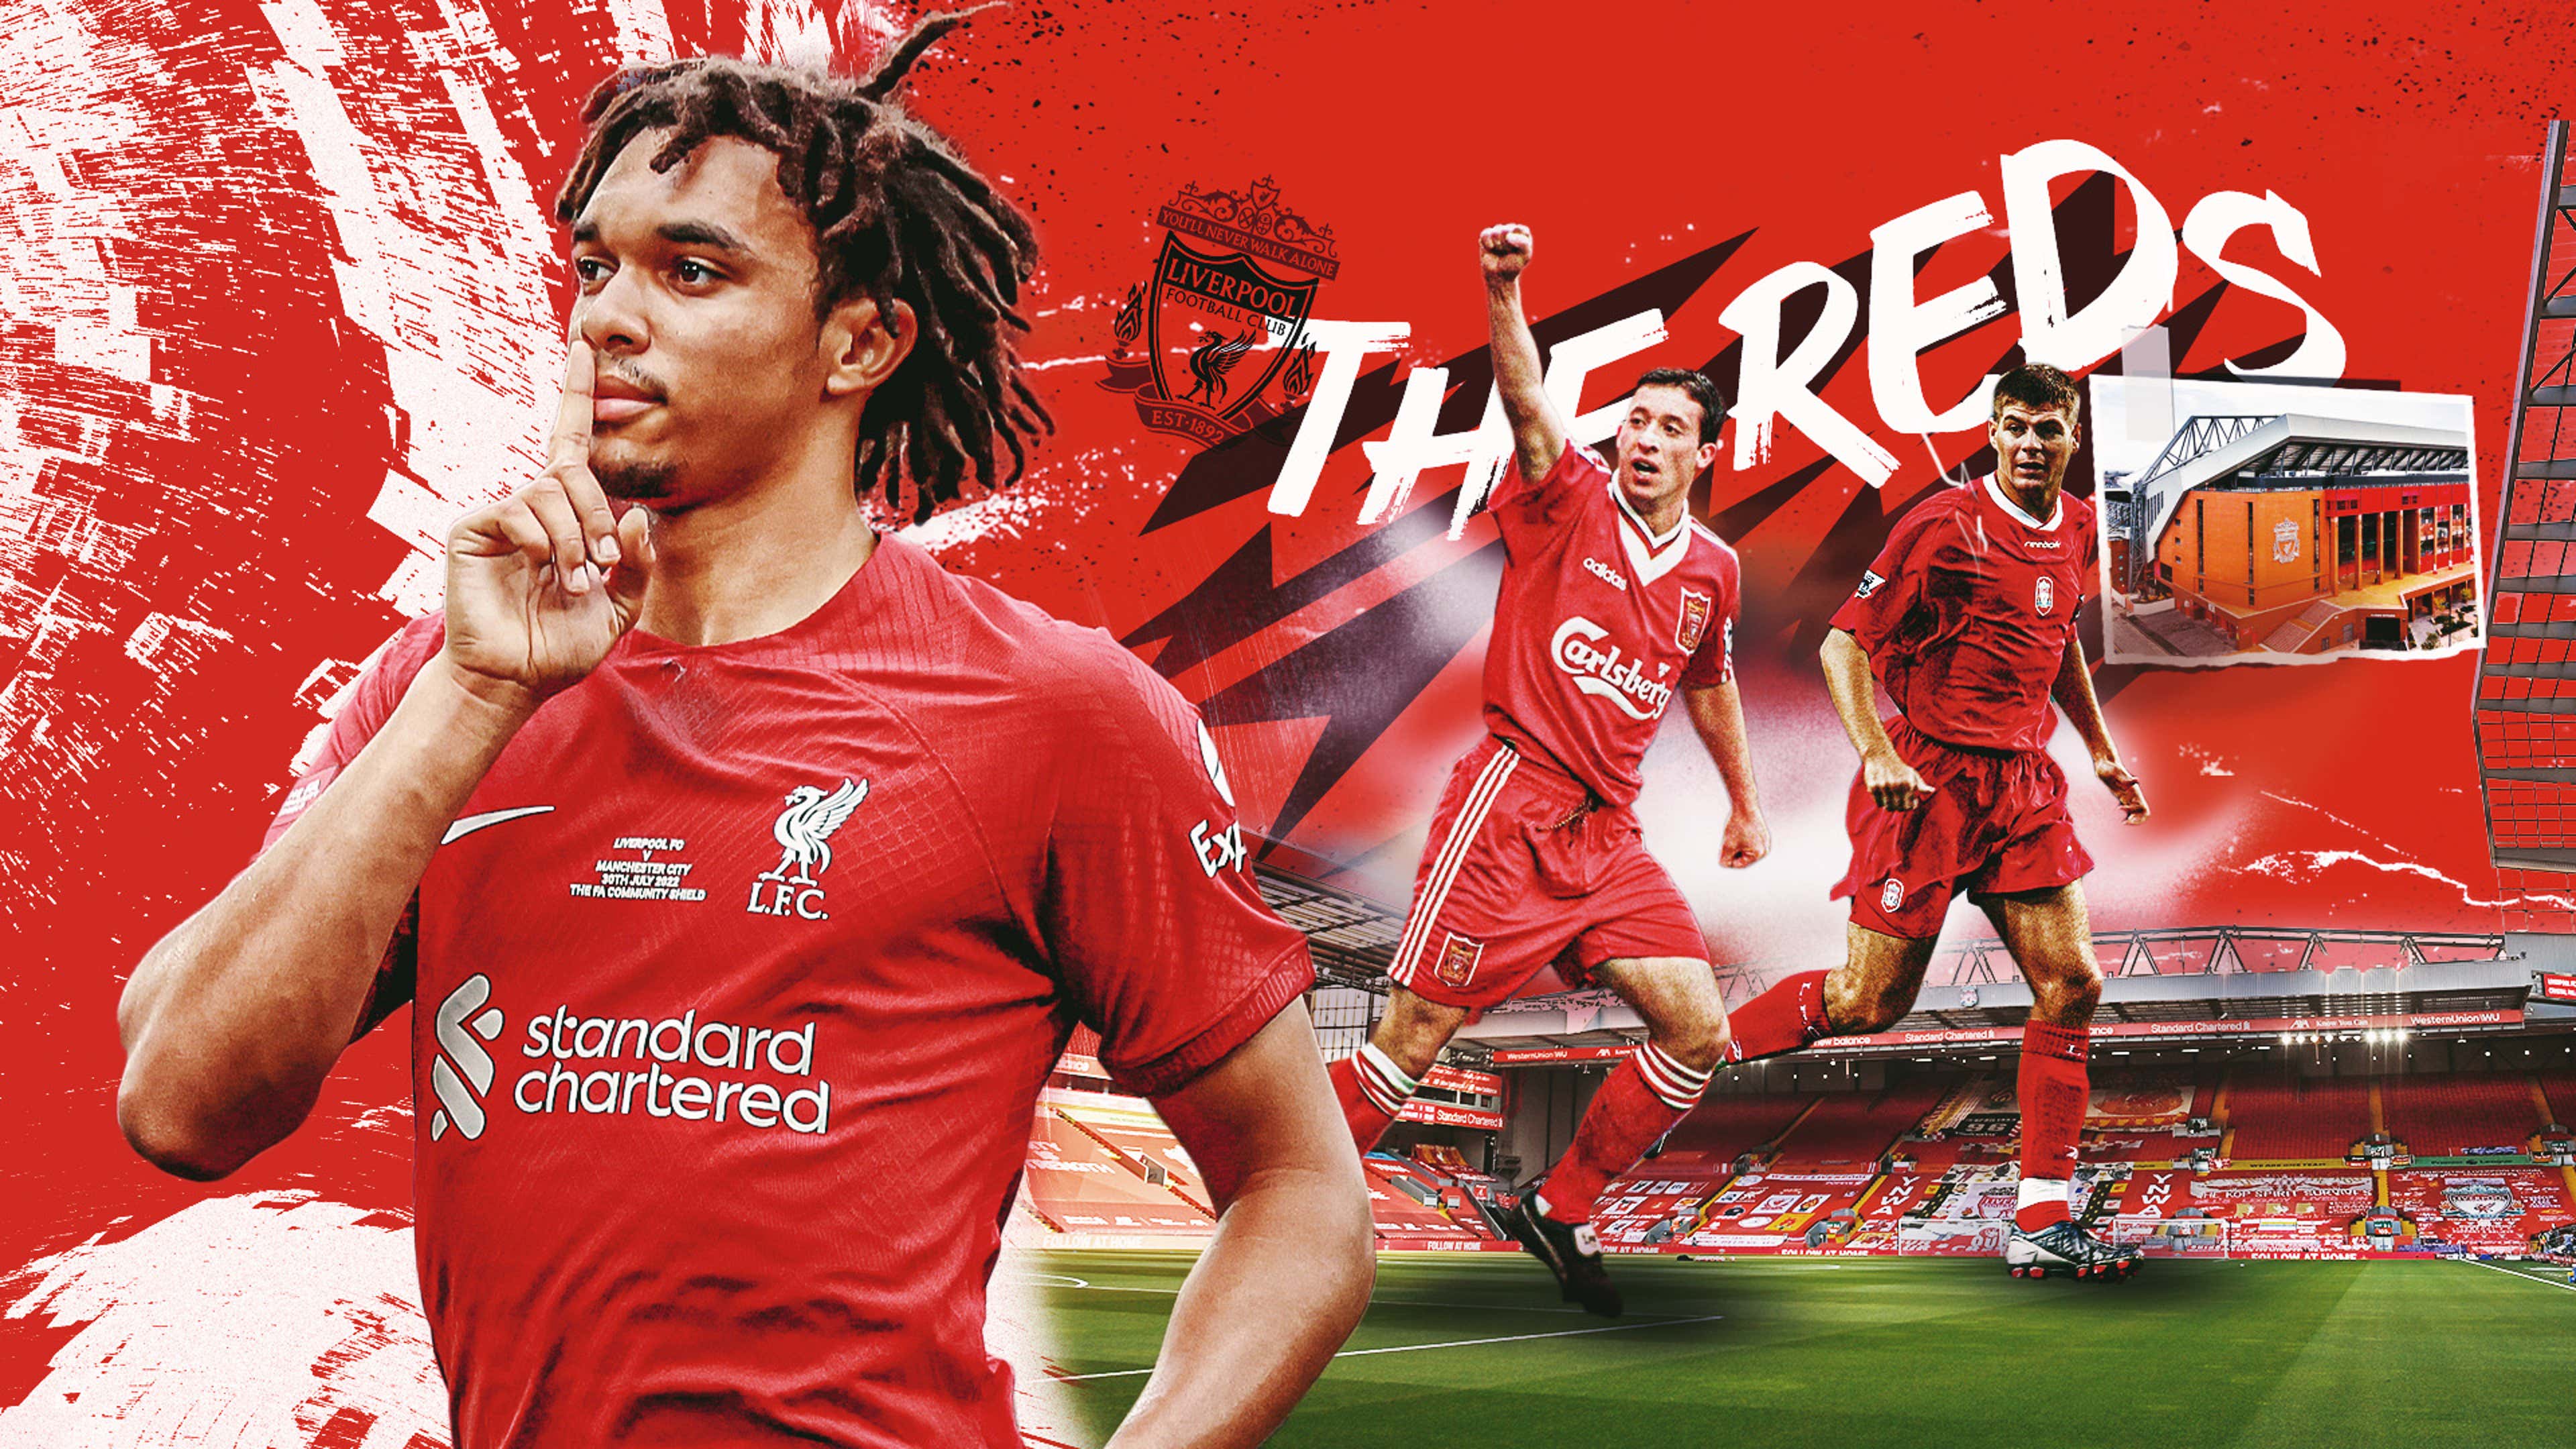 Liverpool FC - E aí, Red, que jogador do #LFC você é? O